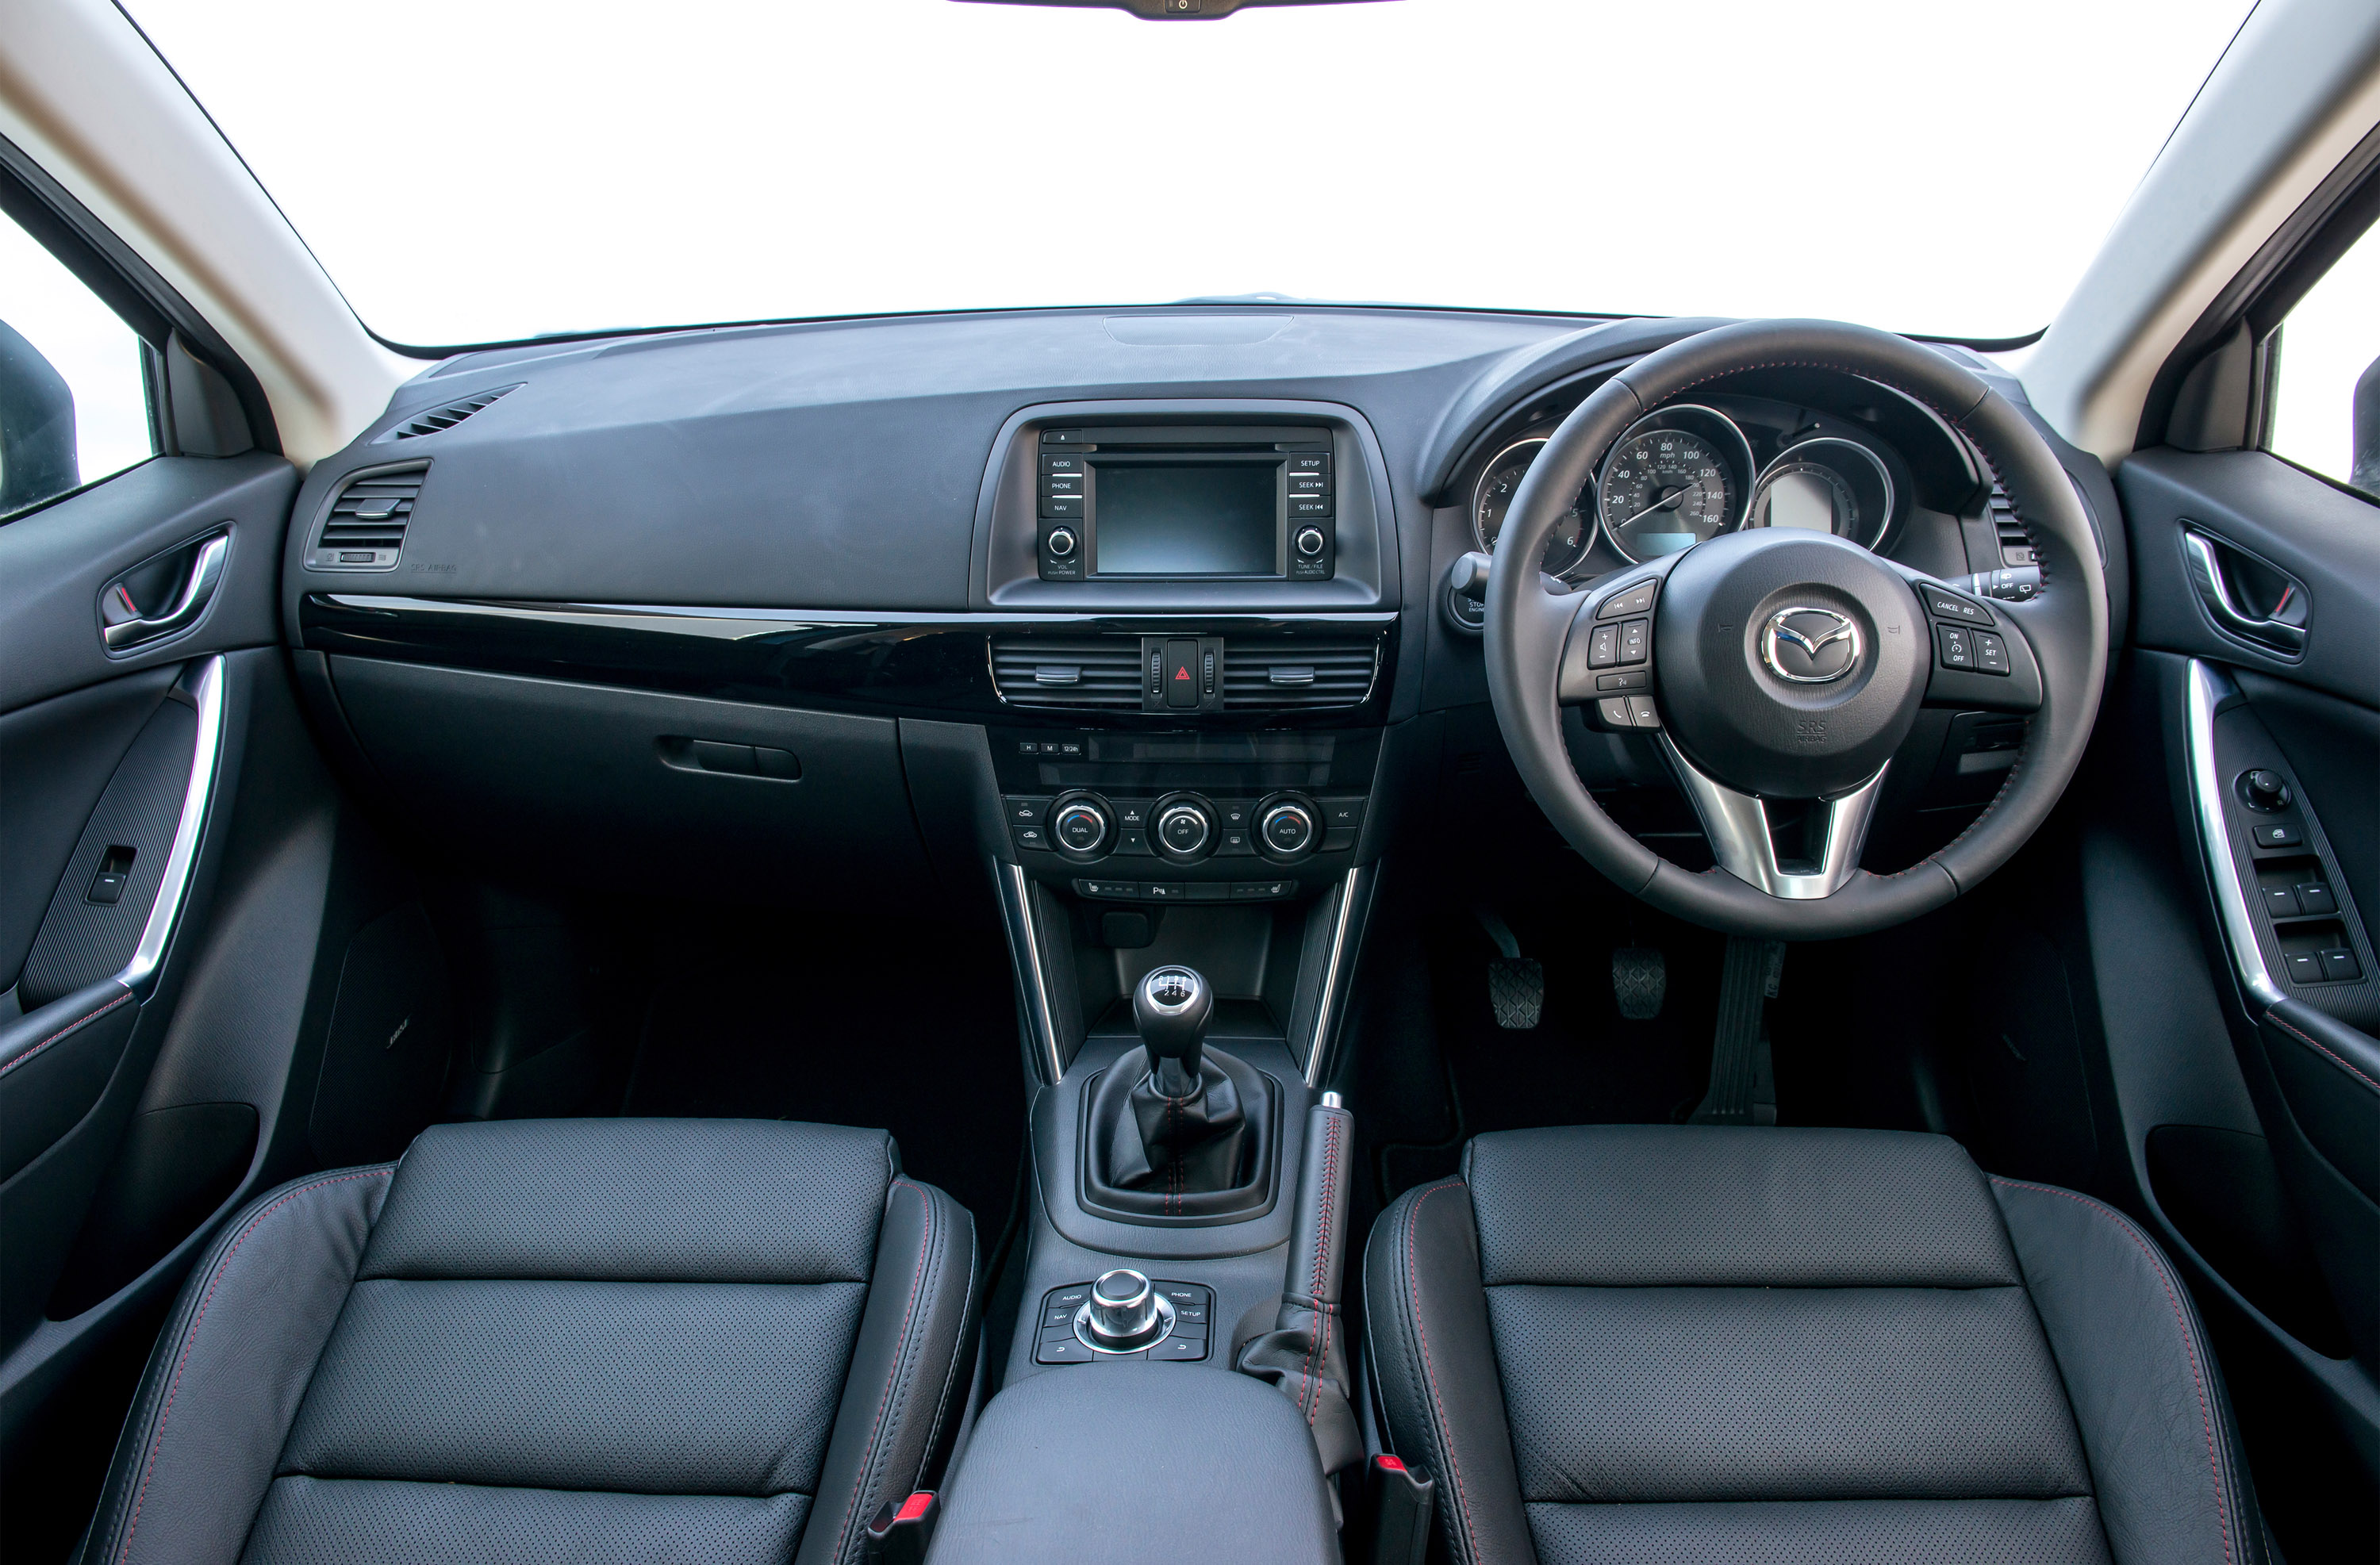 Mazda Cx 5 Interior Indonesia - Mazda CX 5 2019